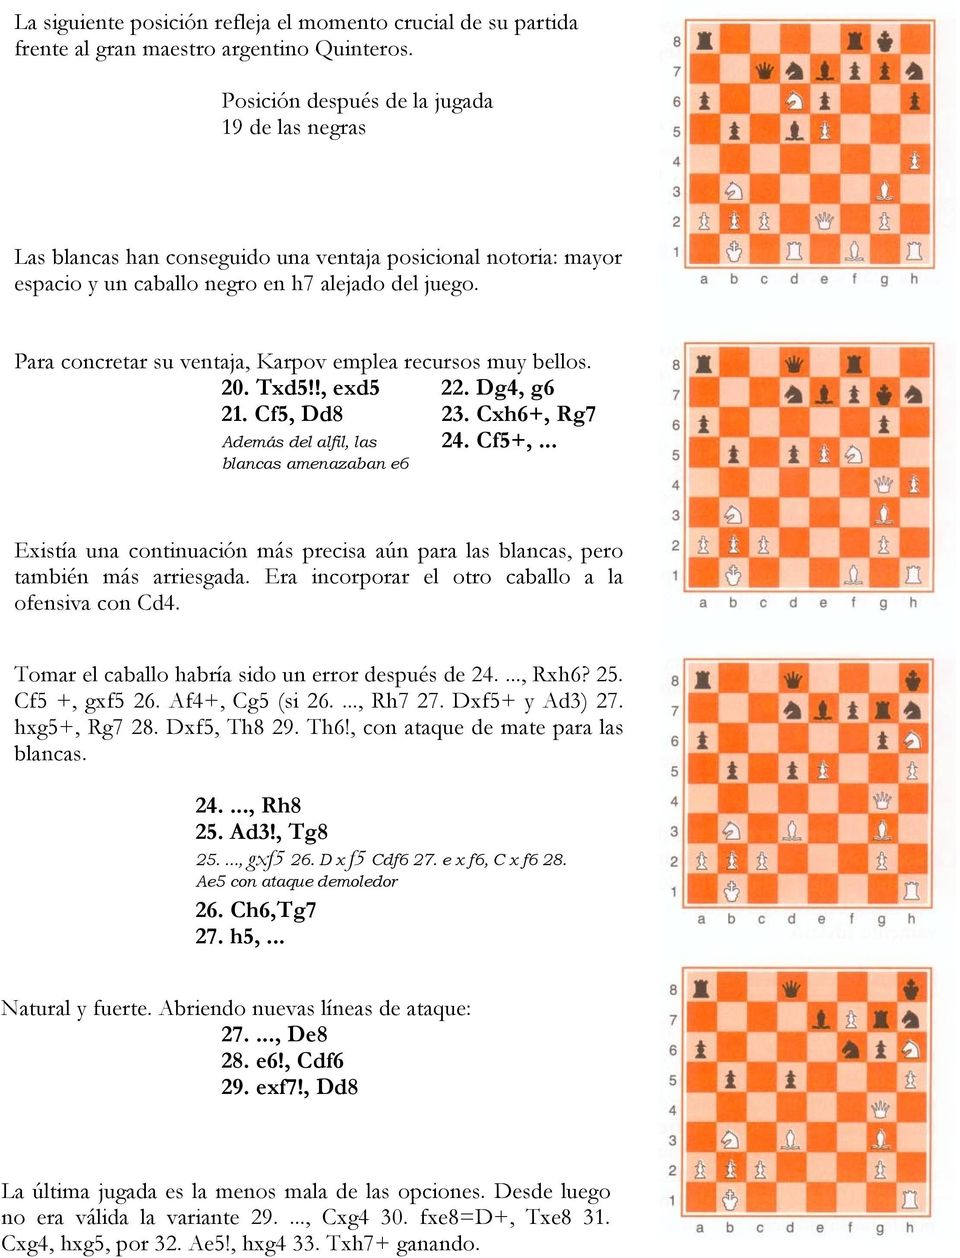 Para concretar su ventaja, Karpov emplea recursos muy bellos. 20. Txd5!!, exd5 22. Dg4, g6 2. Cf5, Dd8 23. Cxh6+, Rg7 Además del alfil, las 24. Cf5+,.